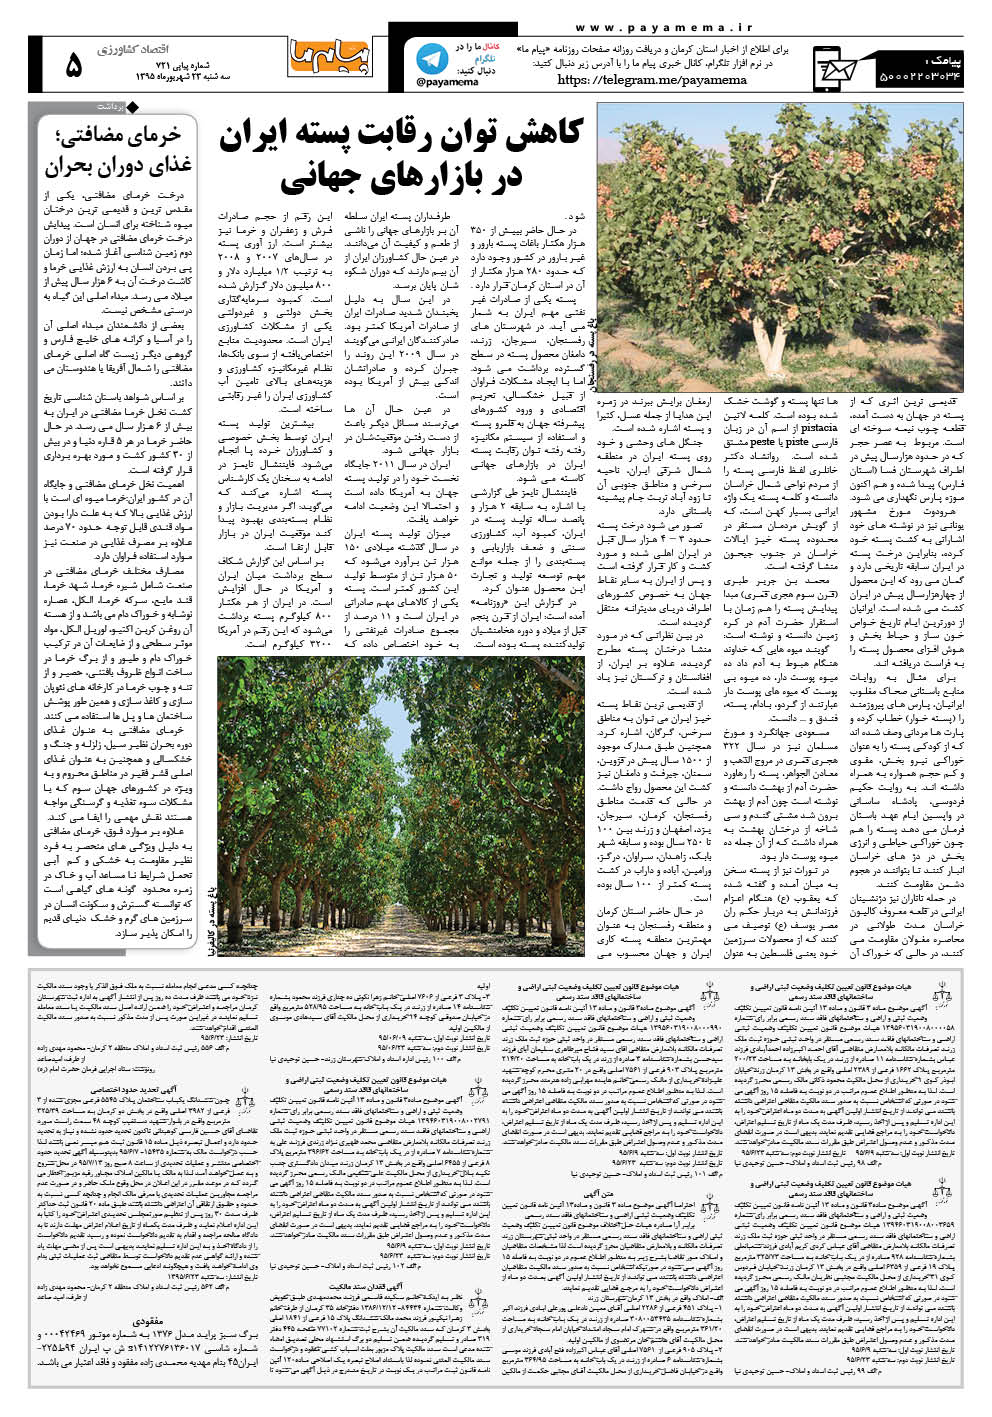 صفحه اقتصاد کشاورزی شماره 721 روزنامه پیام ما